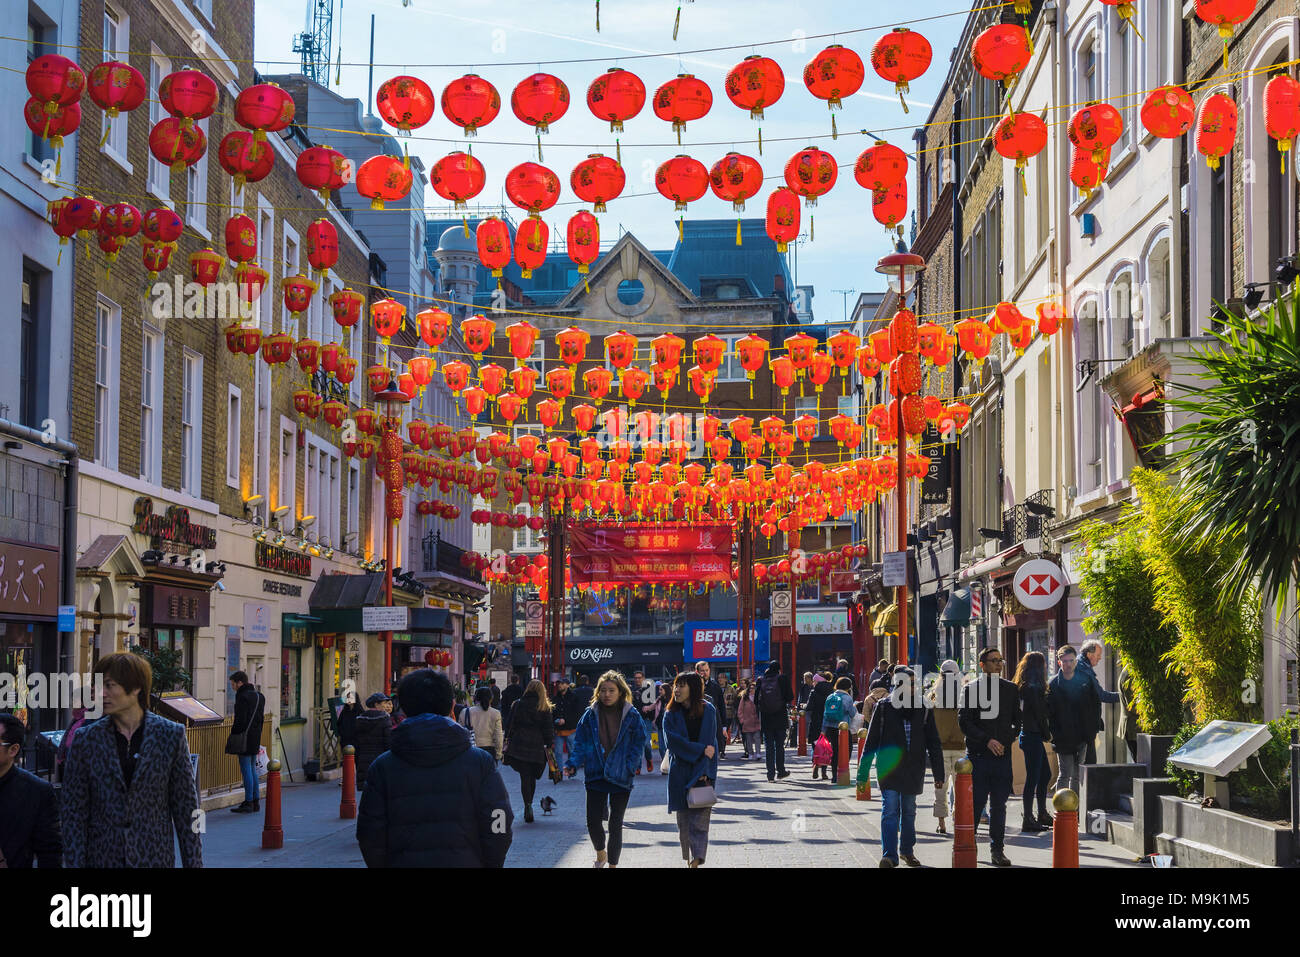 Londres, Royaume-Uni - 21 mars : c'est Gerrard Street La rue principale dans le célèbre quartier de Chinatown le 21 mars 2018 à Londres Banque D'Images